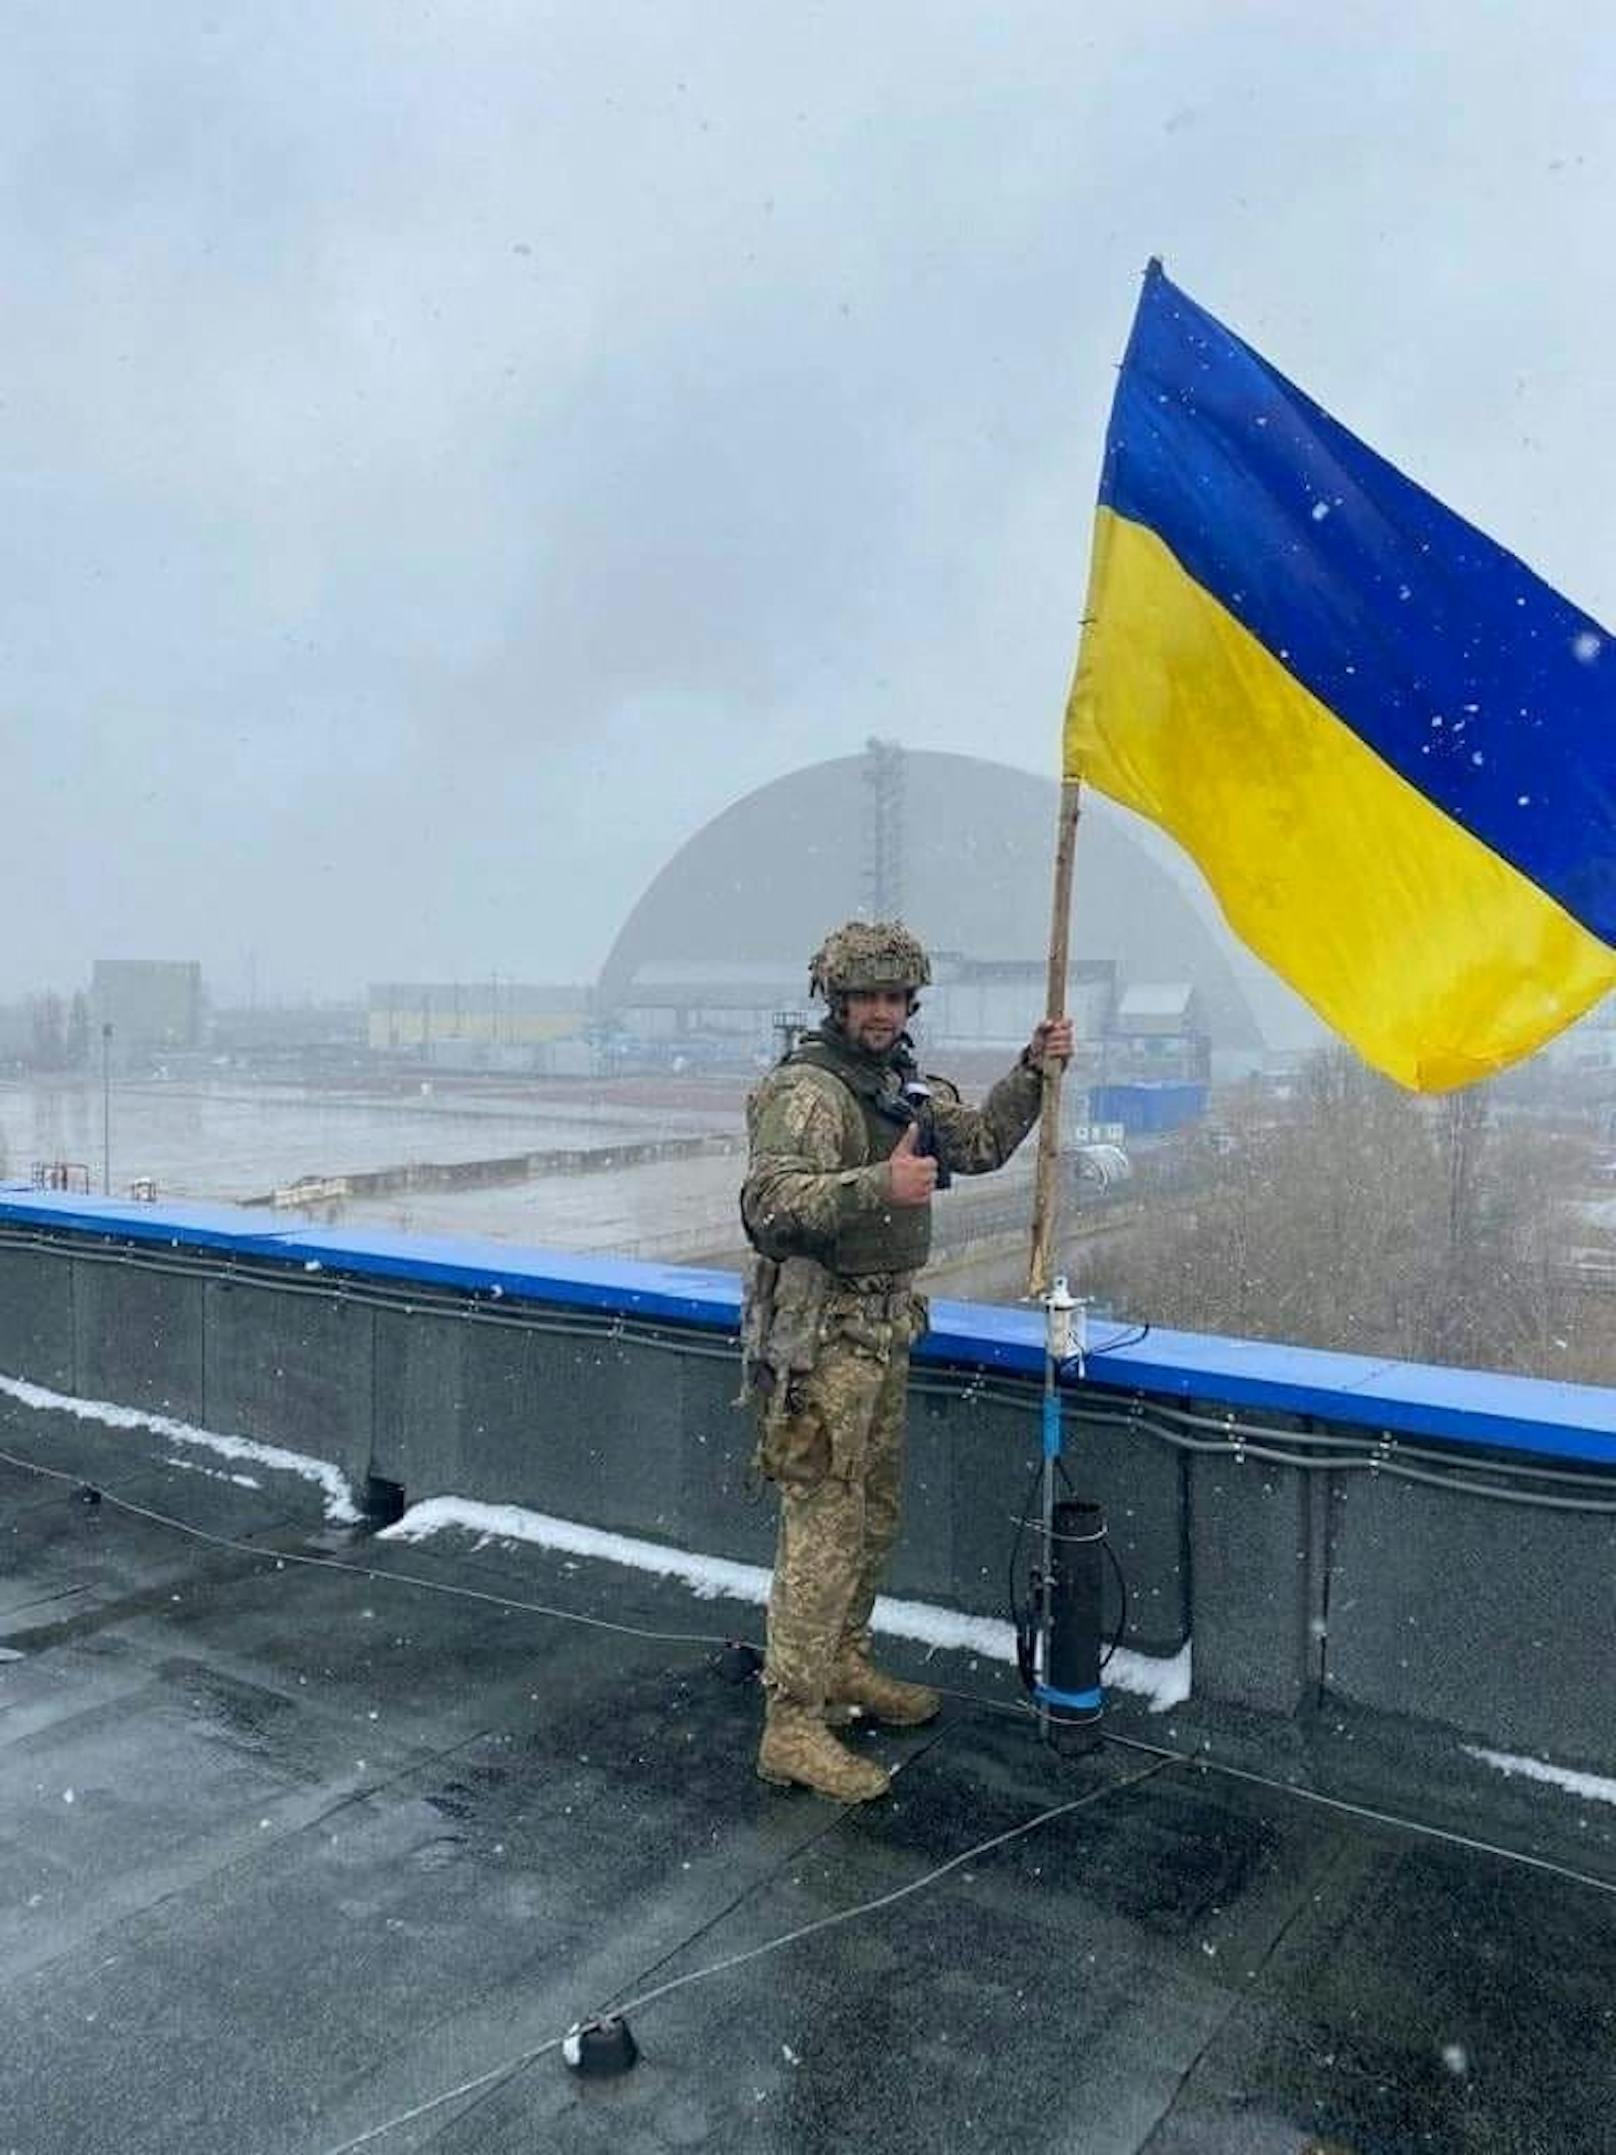 Nach dem Rückzug der russischen Besatzer stoßen ukrainische Truppen weiter in den Norden des Landes vor. Dort werden sie von der Bevölkerung jubelnd empfangen. (3. April 2022)